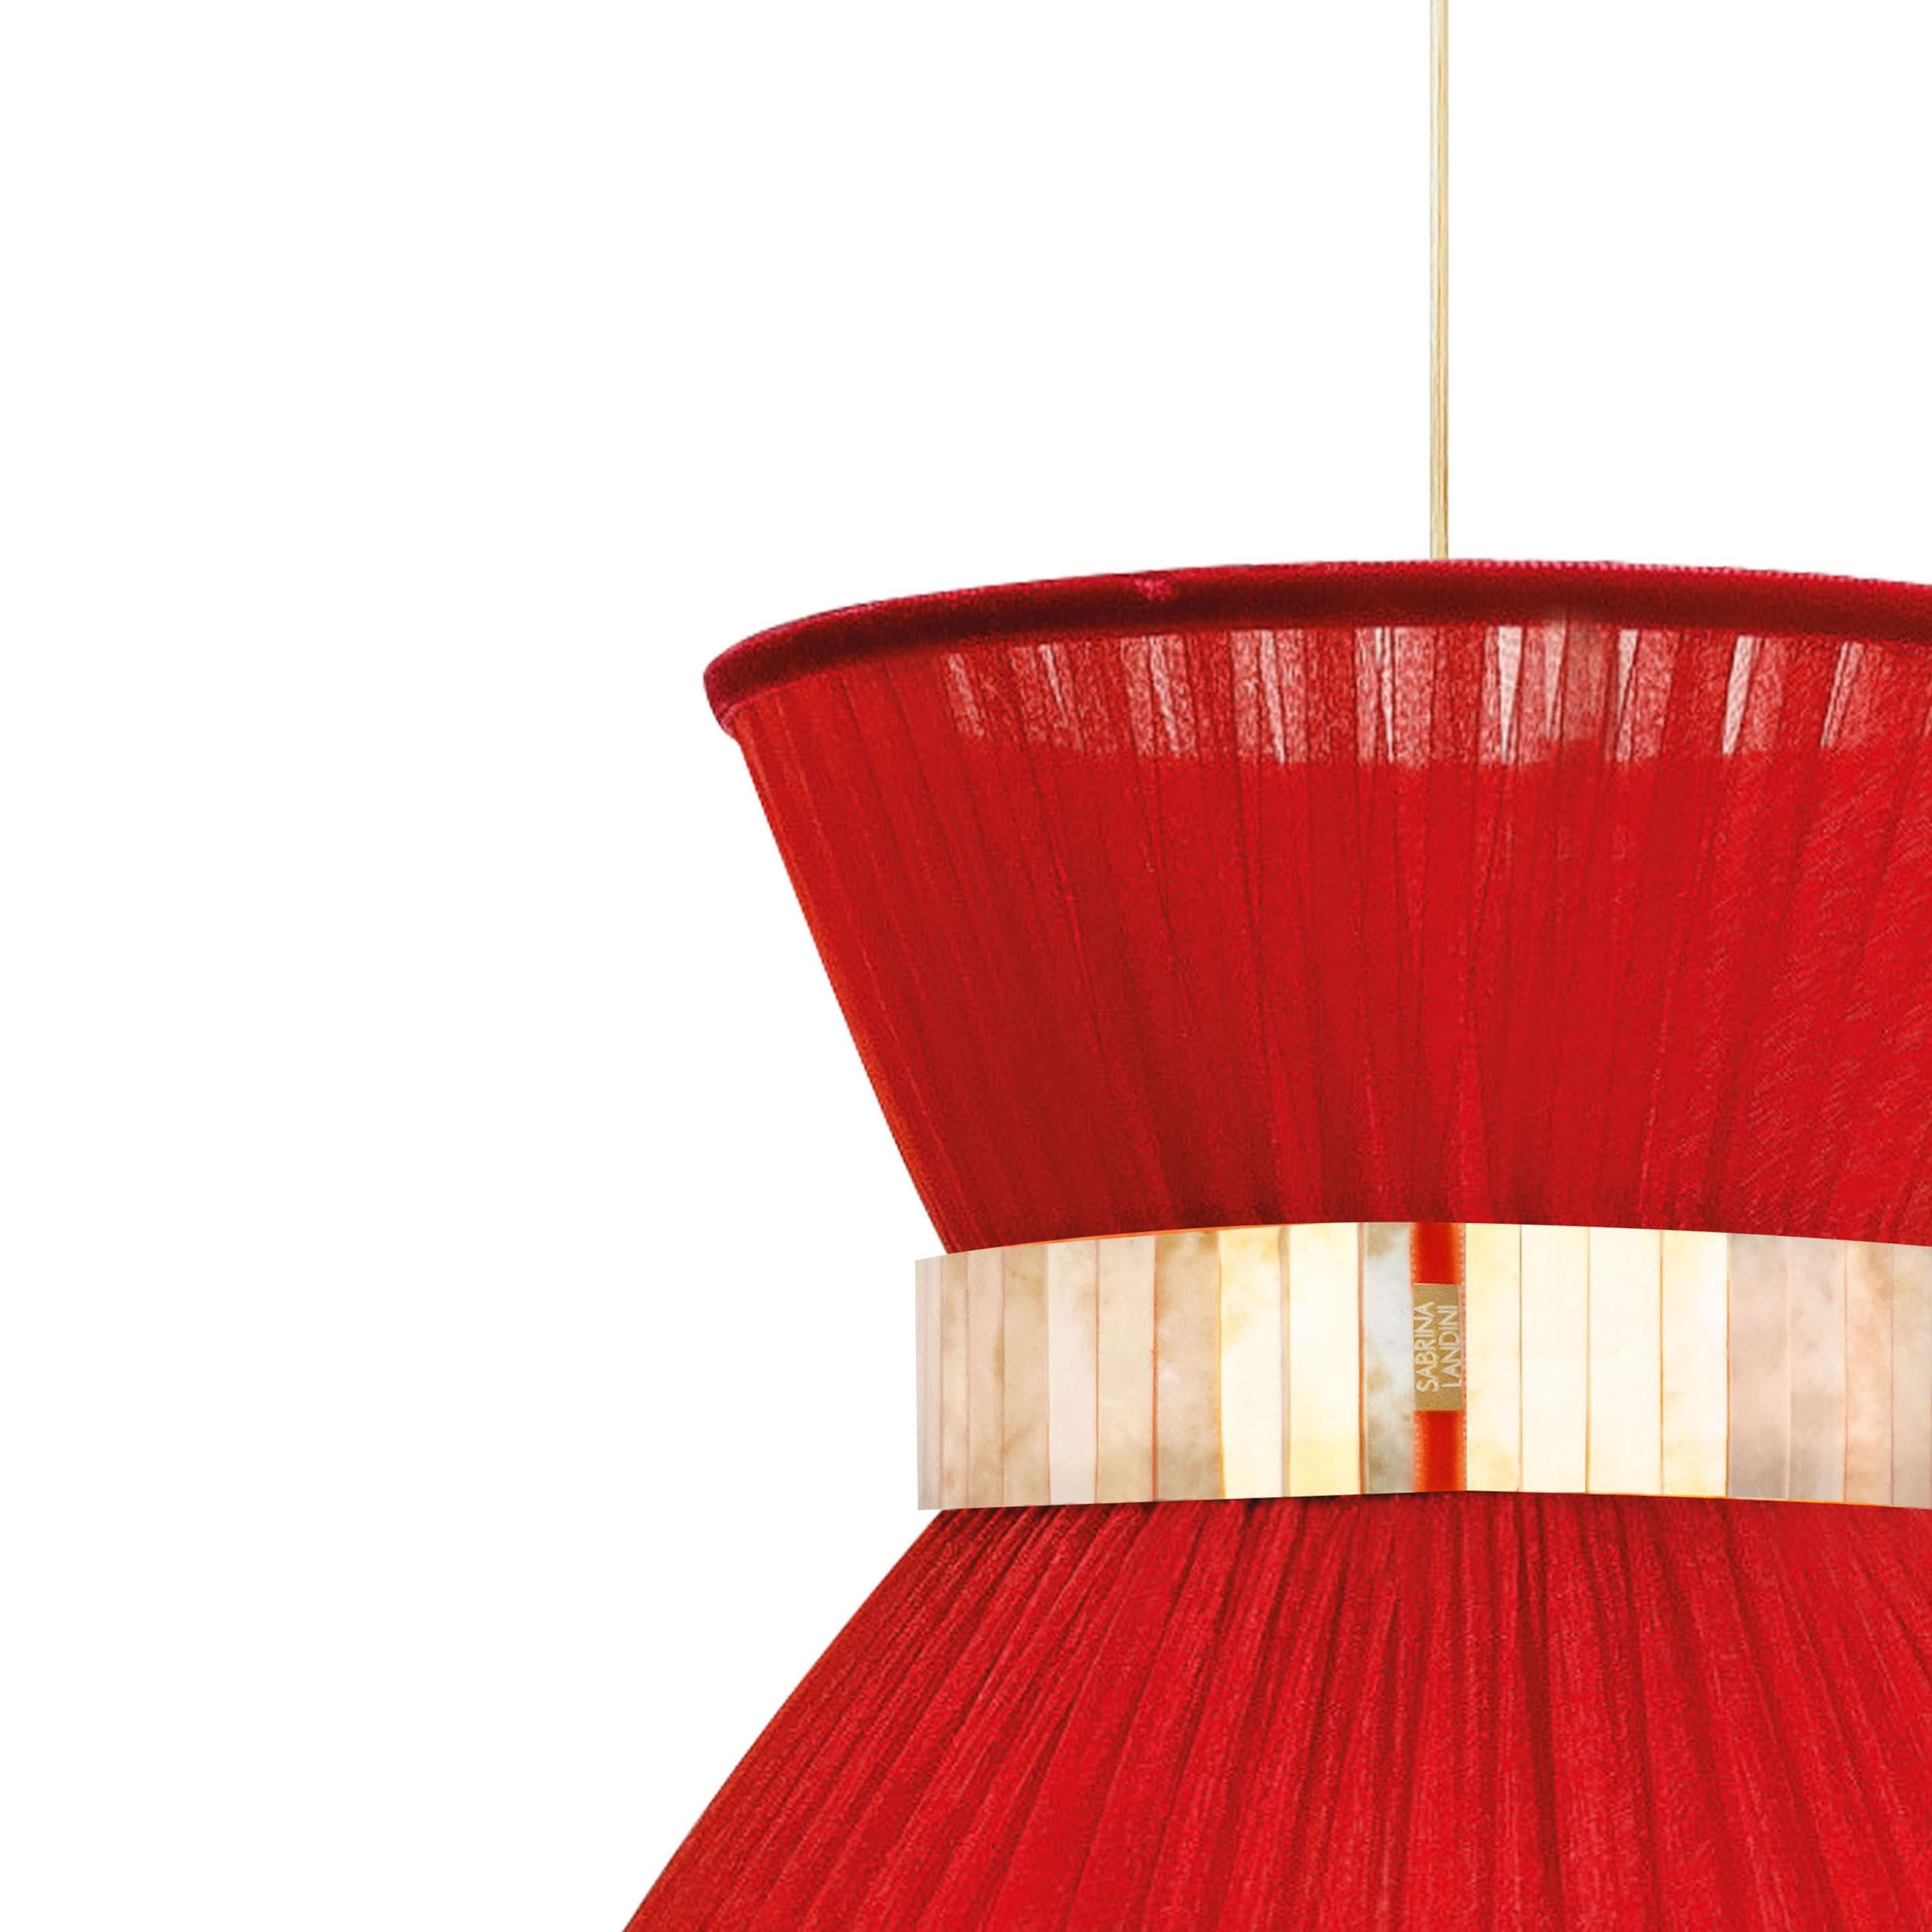 TIFFANY La lampe emblématique !

Depuis 20 ans, nous perpétuons notre méthode de fabrication unique. Inspirée par les reflets illimités du verre, Sabrina Landini a créé une élégante collection pour la maison.
Si vous vous trouvez en Toscane -